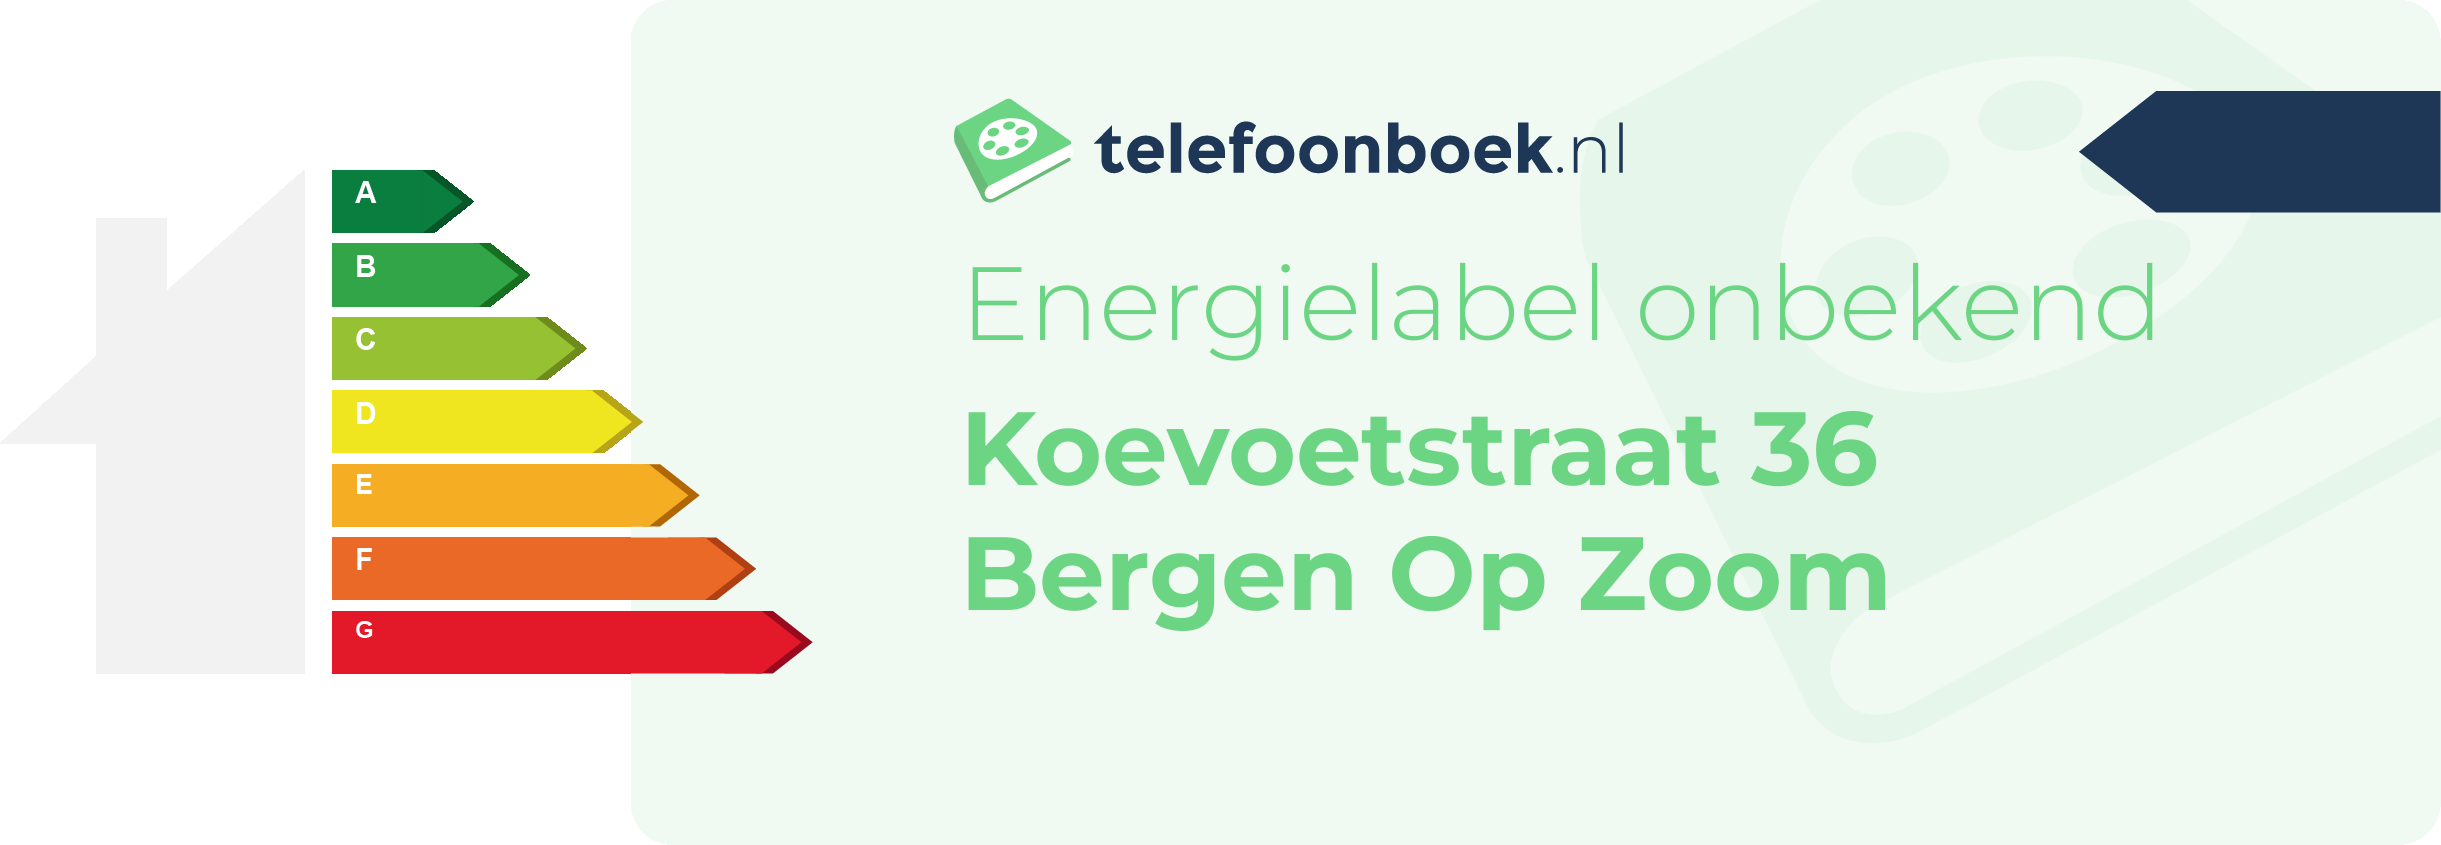 Energielabel Koevoetstraat 36 Bergen Op Zoom